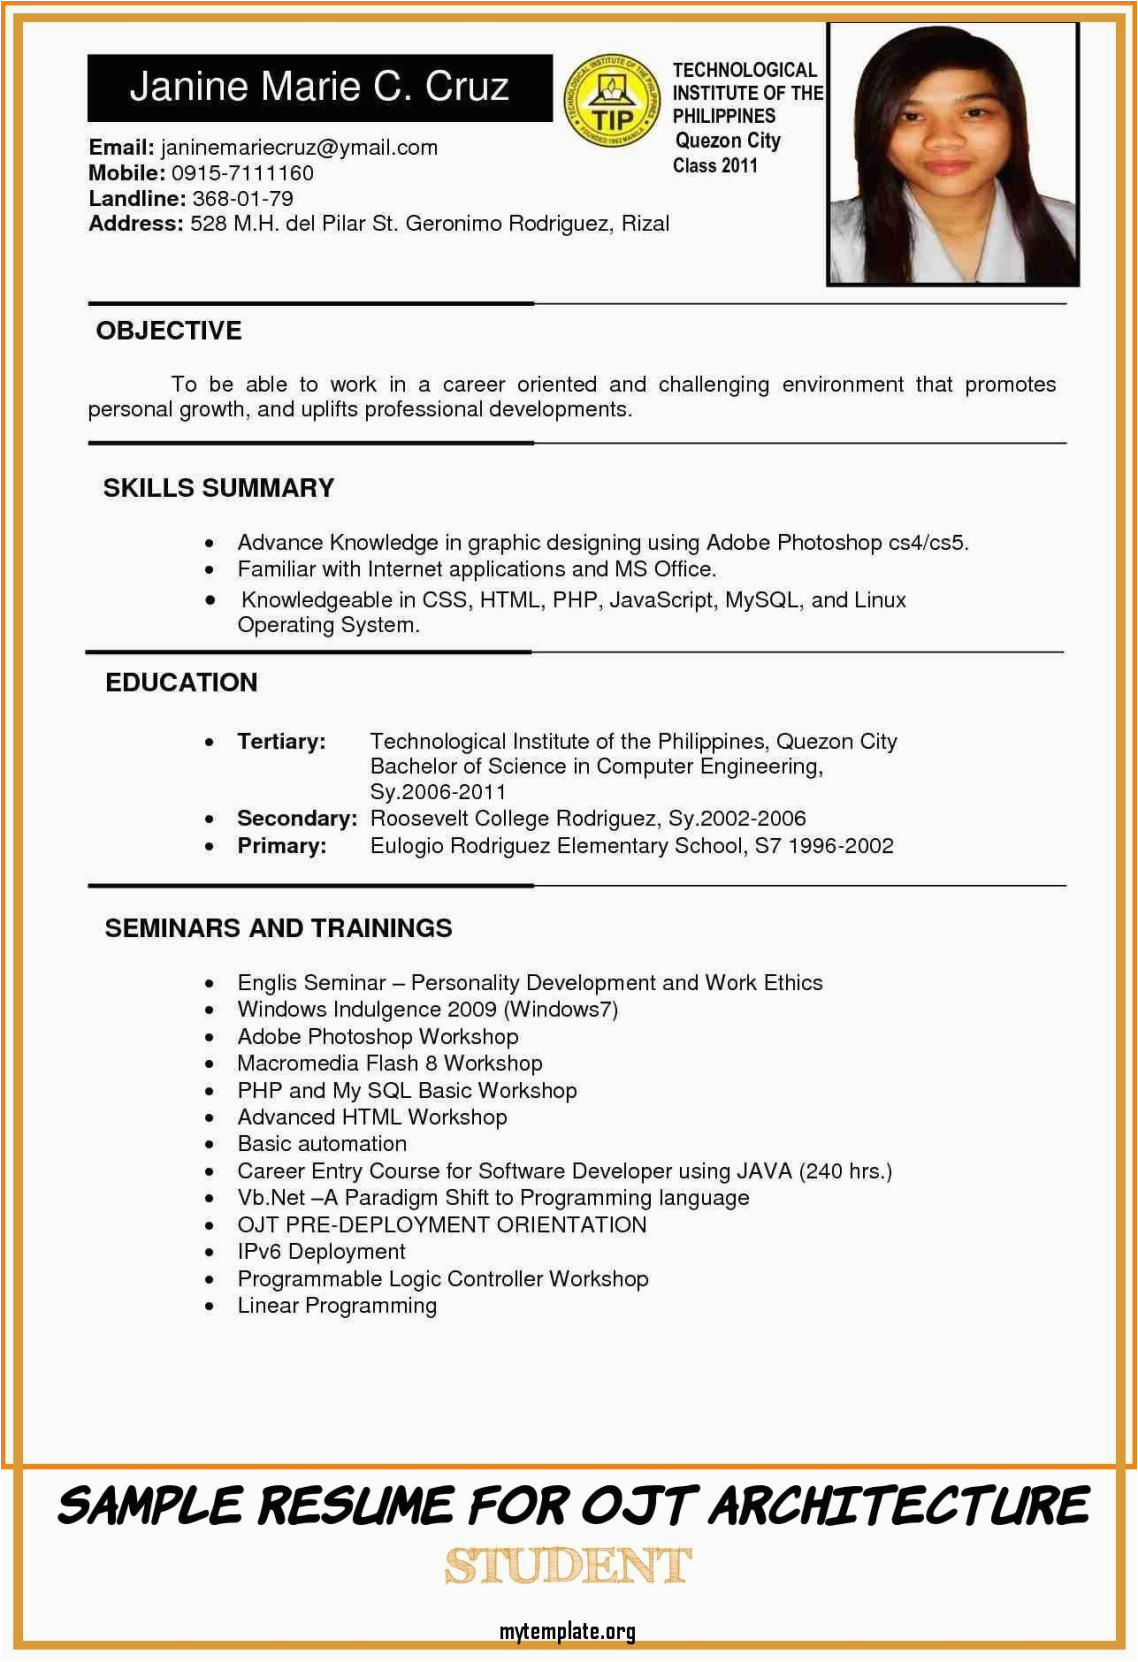 Resume Sample for Ojt Business Administration Sample Resume for Ojt Architecture Student Resume